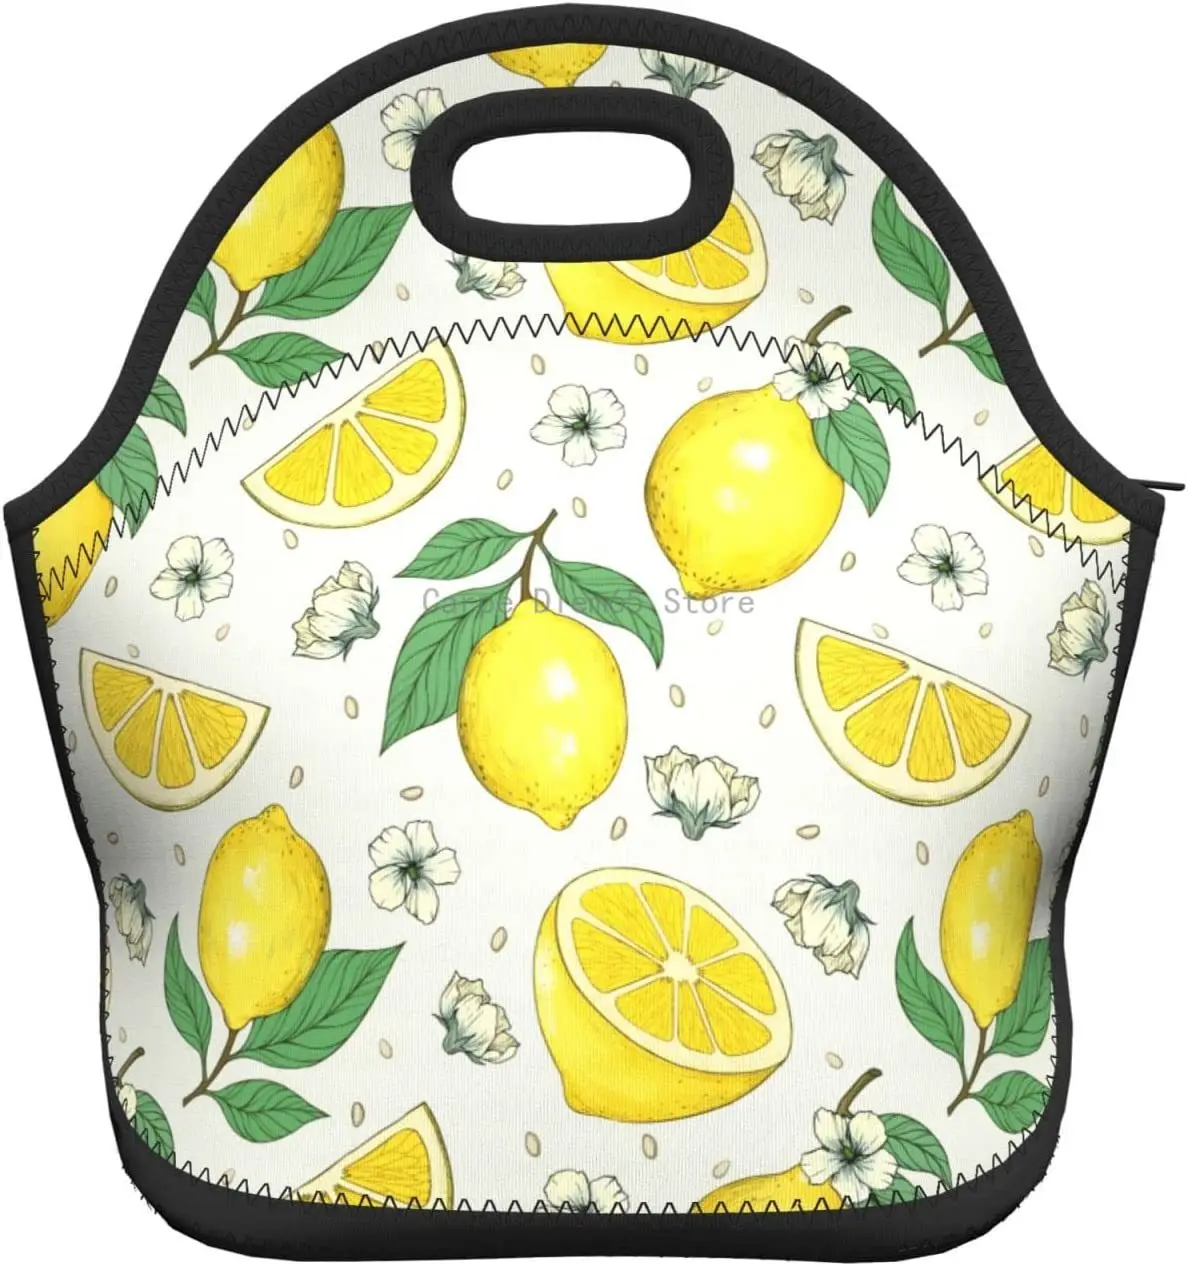 Lemons Изолированная неопреновая сумка для ланча, сумки для ланча, Переносной ланч-бокс, сумка-холодильник для ланча, сумка для пикника/катания на лодках/рыбалки/работы